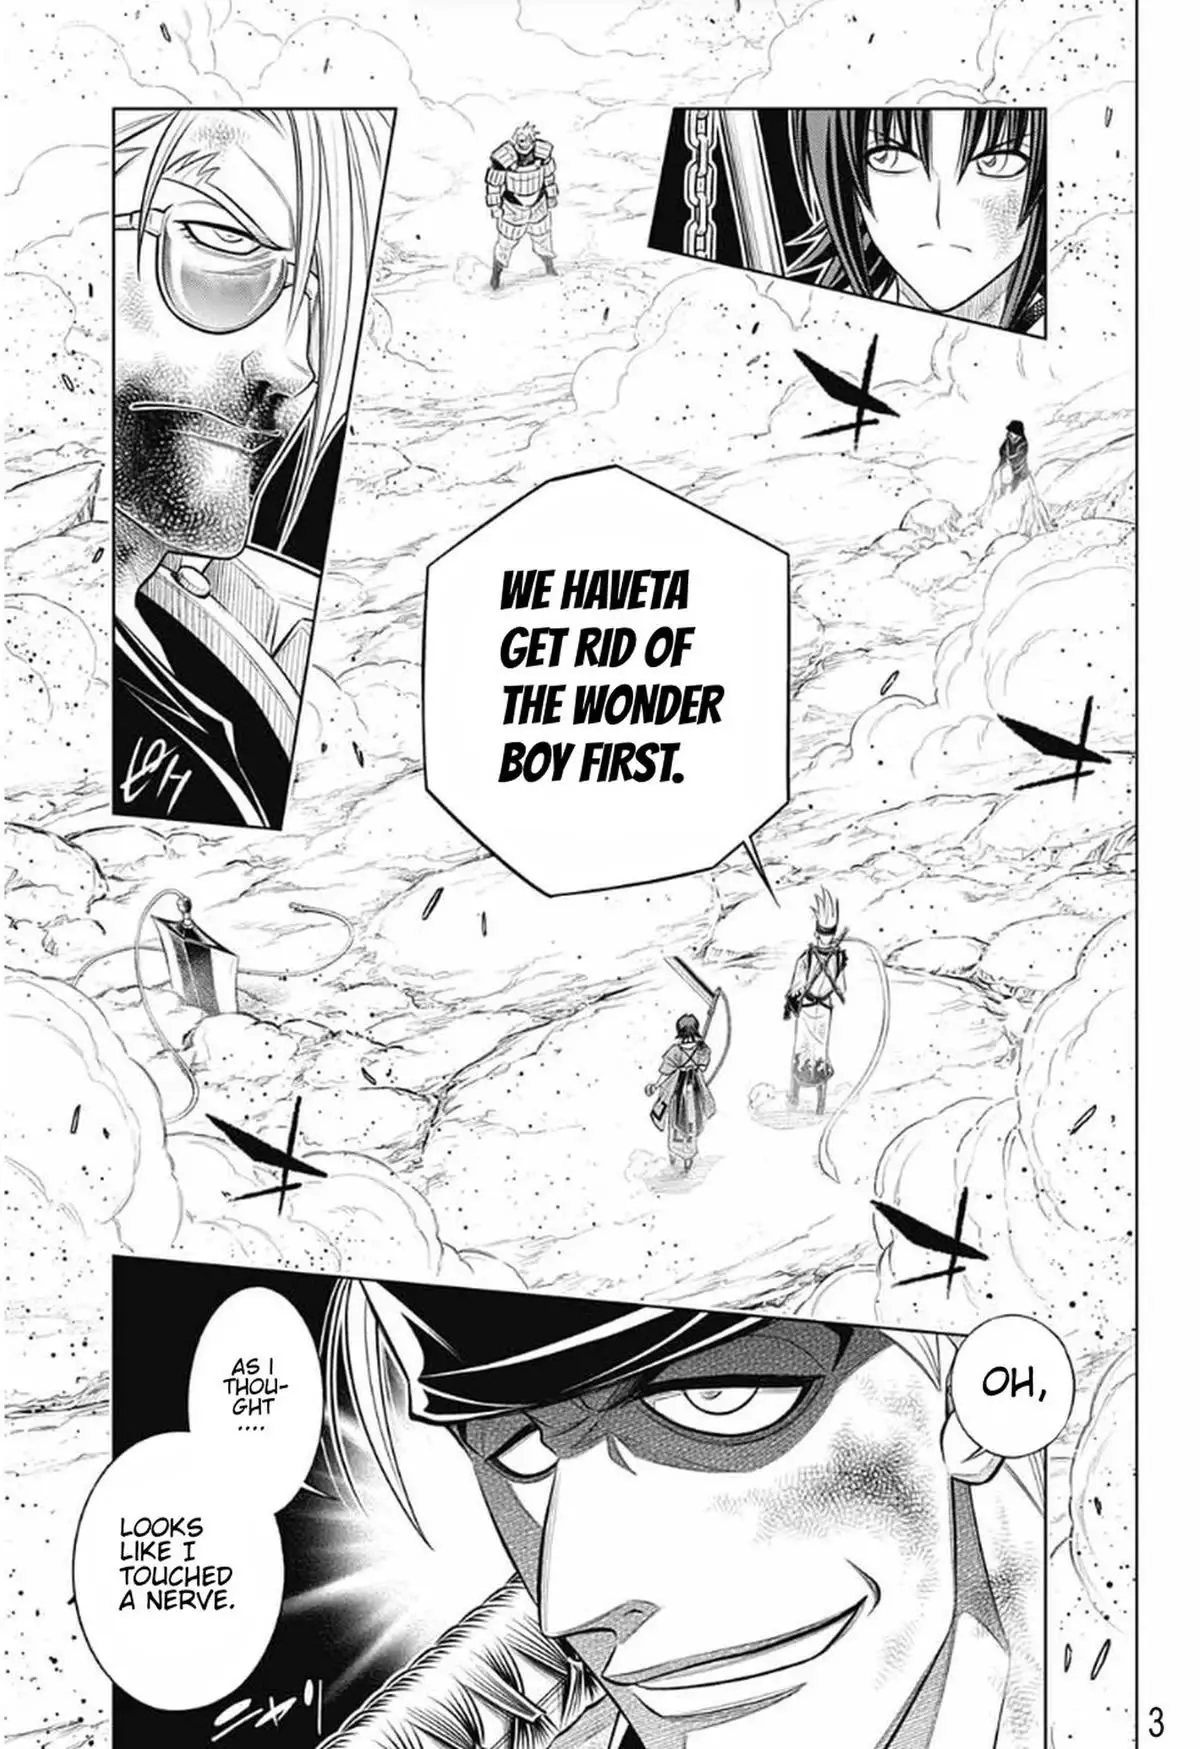 Rurouni Kenshin: Hokkaido Arc - 55 page 3-5a45f60e